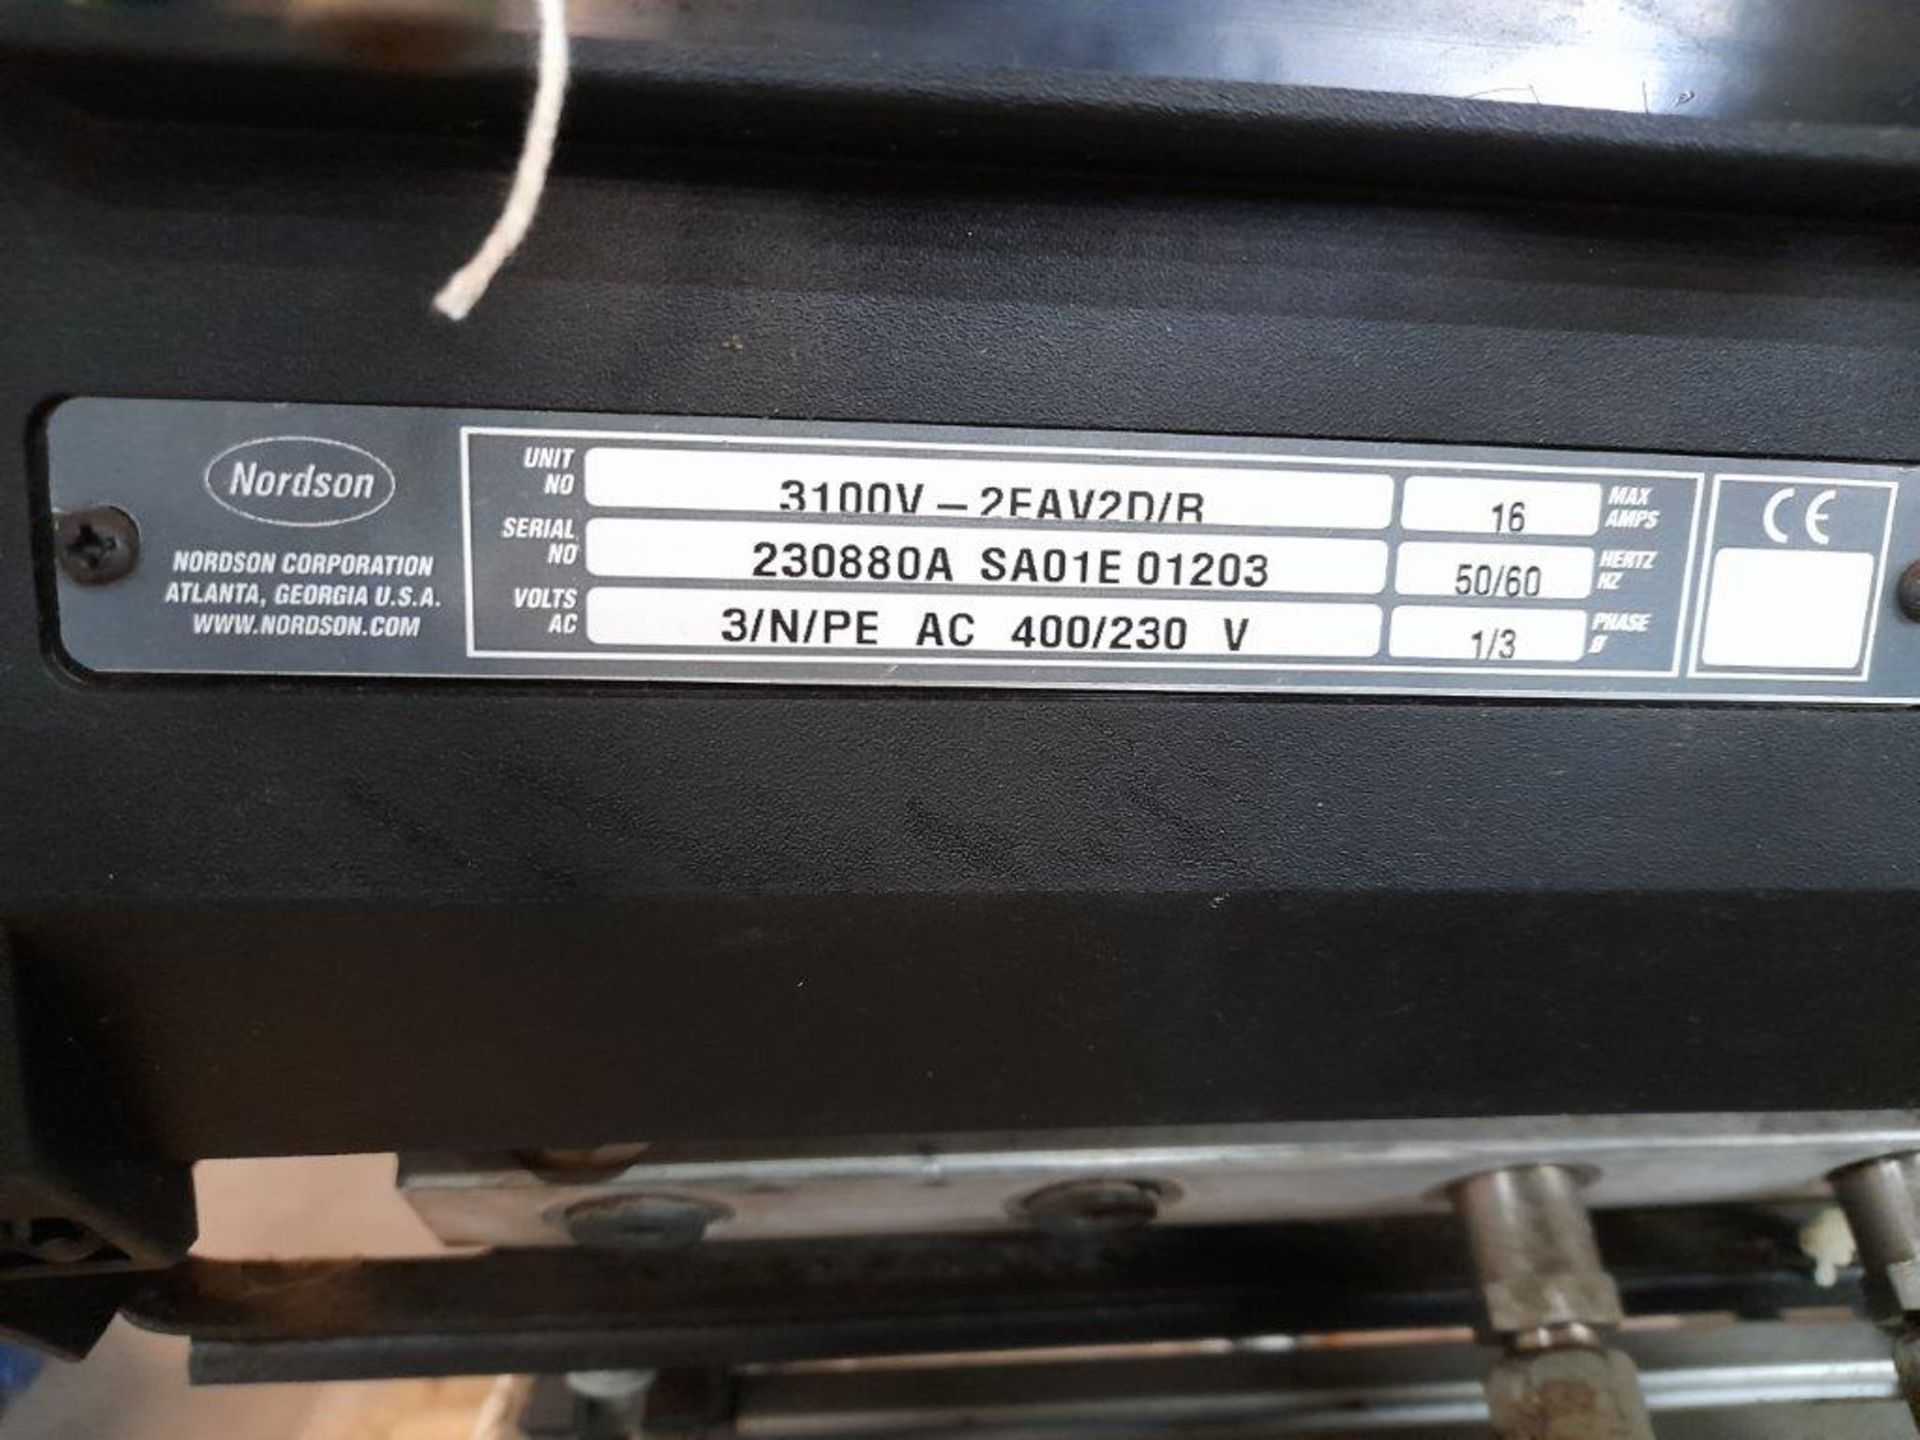 Nordson Series 3100V hot melt applicator Serial No. 230880A SA01E 01203 Electric operation 3100V/ - Image 2 of 4